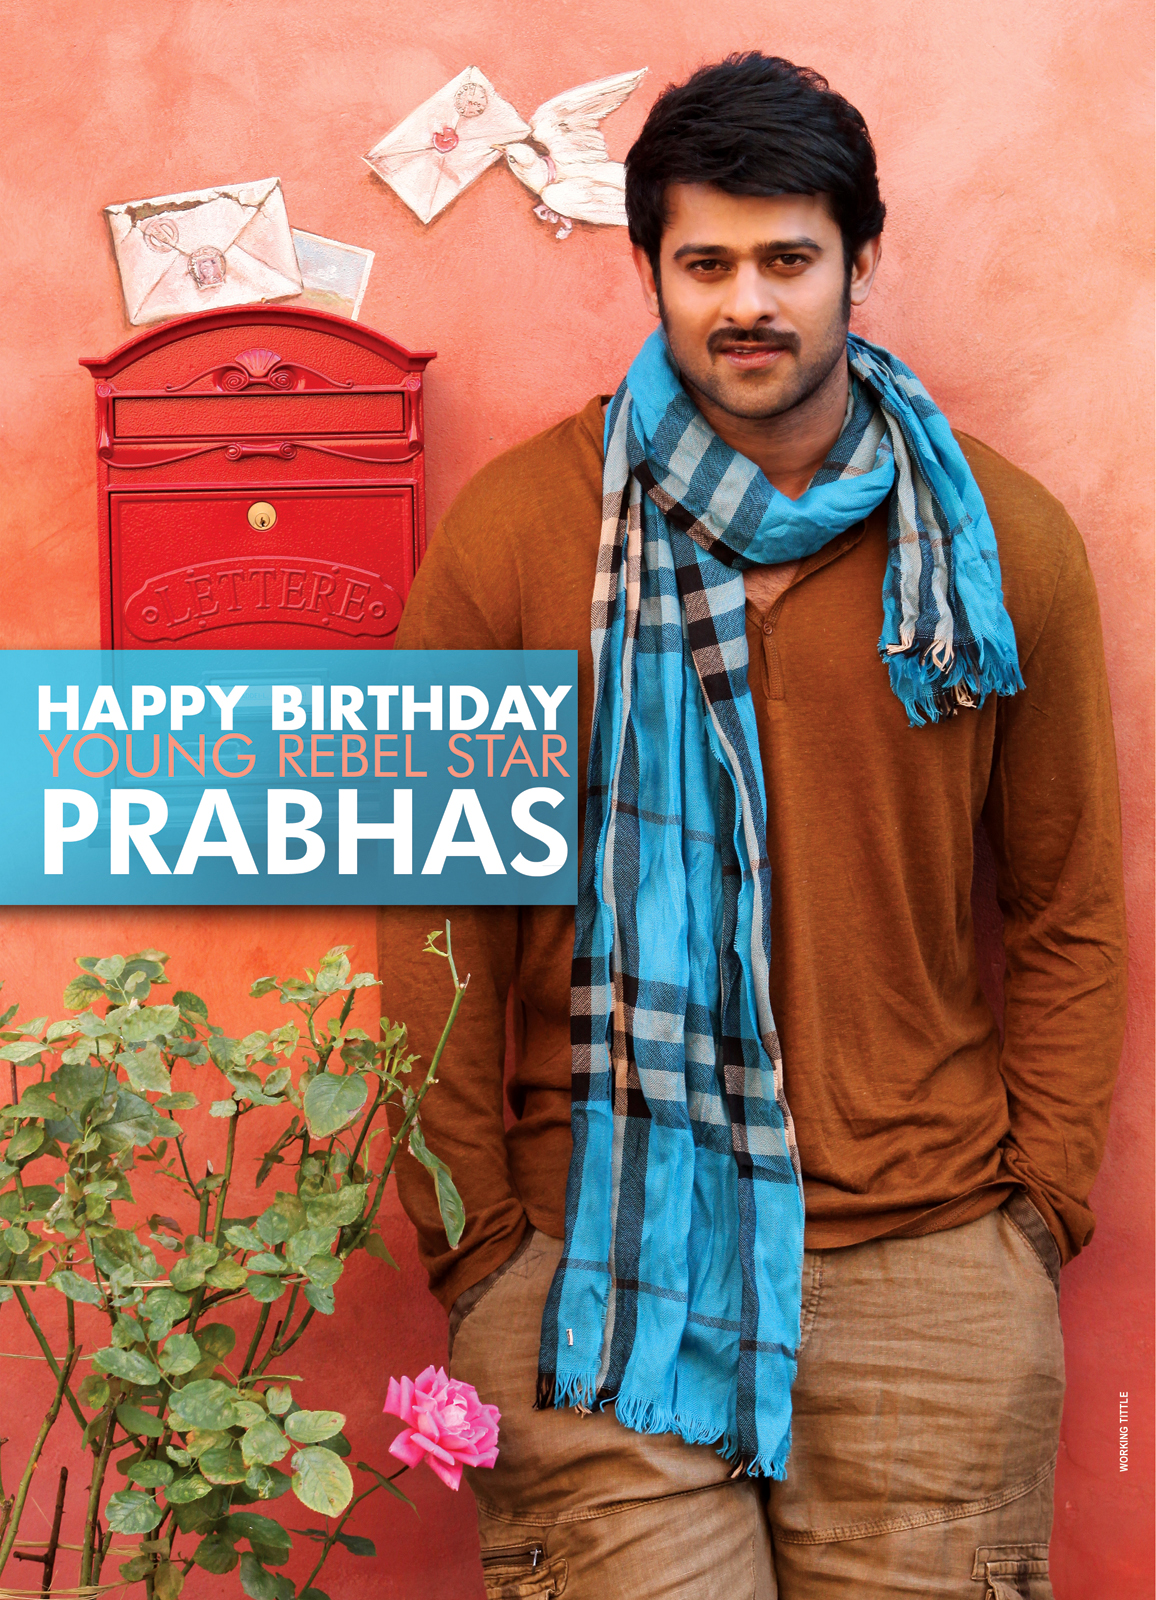 Happy Birthday To Prabhas, Happy birthday to actor prabhas, happy birthday prabhas, prabhas birthday, rebel star prabhas birthday.